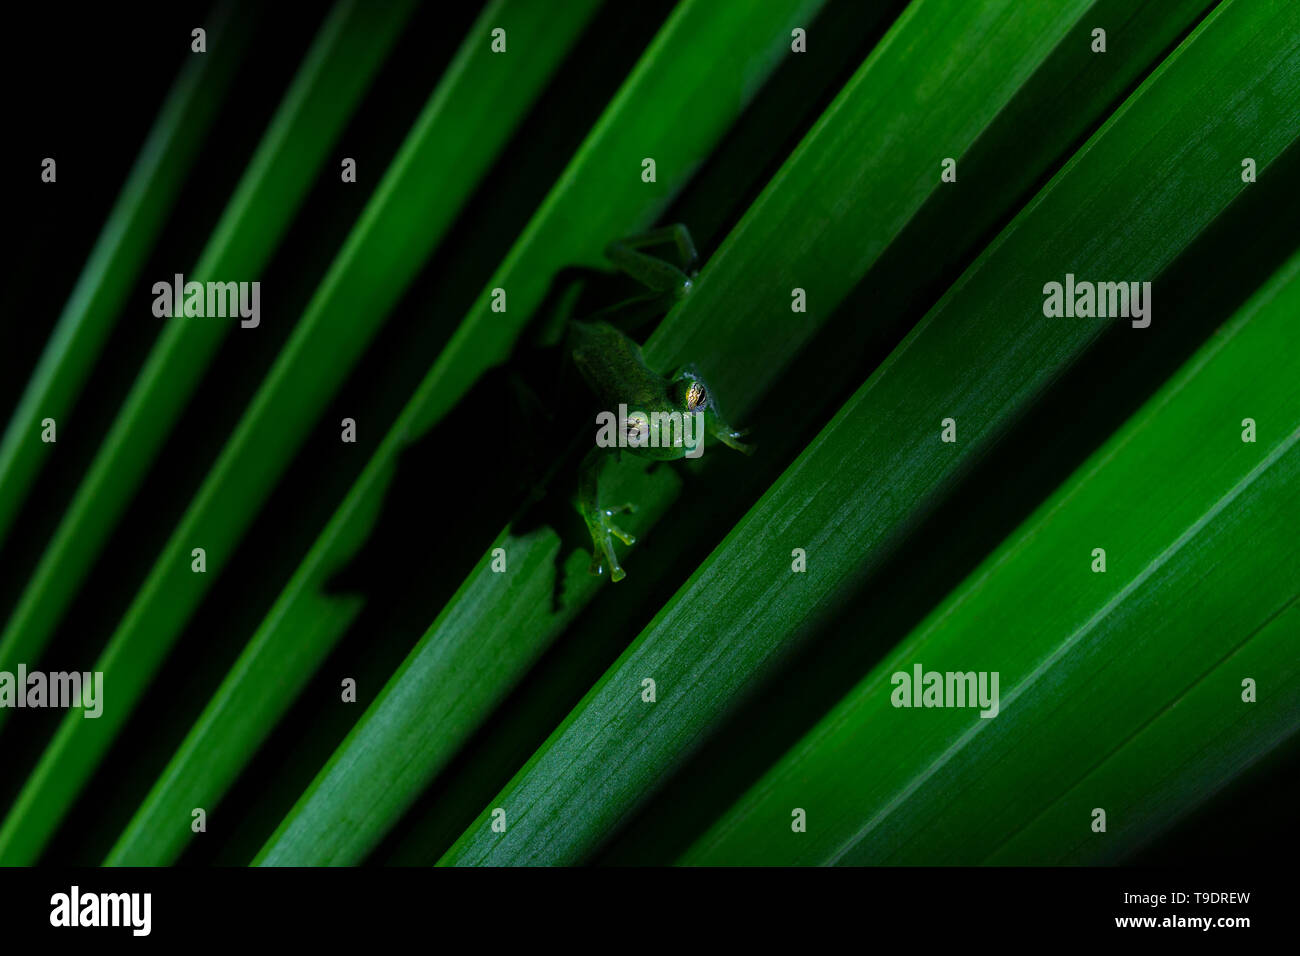 Grenouille de verre émeraude photographié sur une feuille d'un palmier dans la nuit Banque D'Images